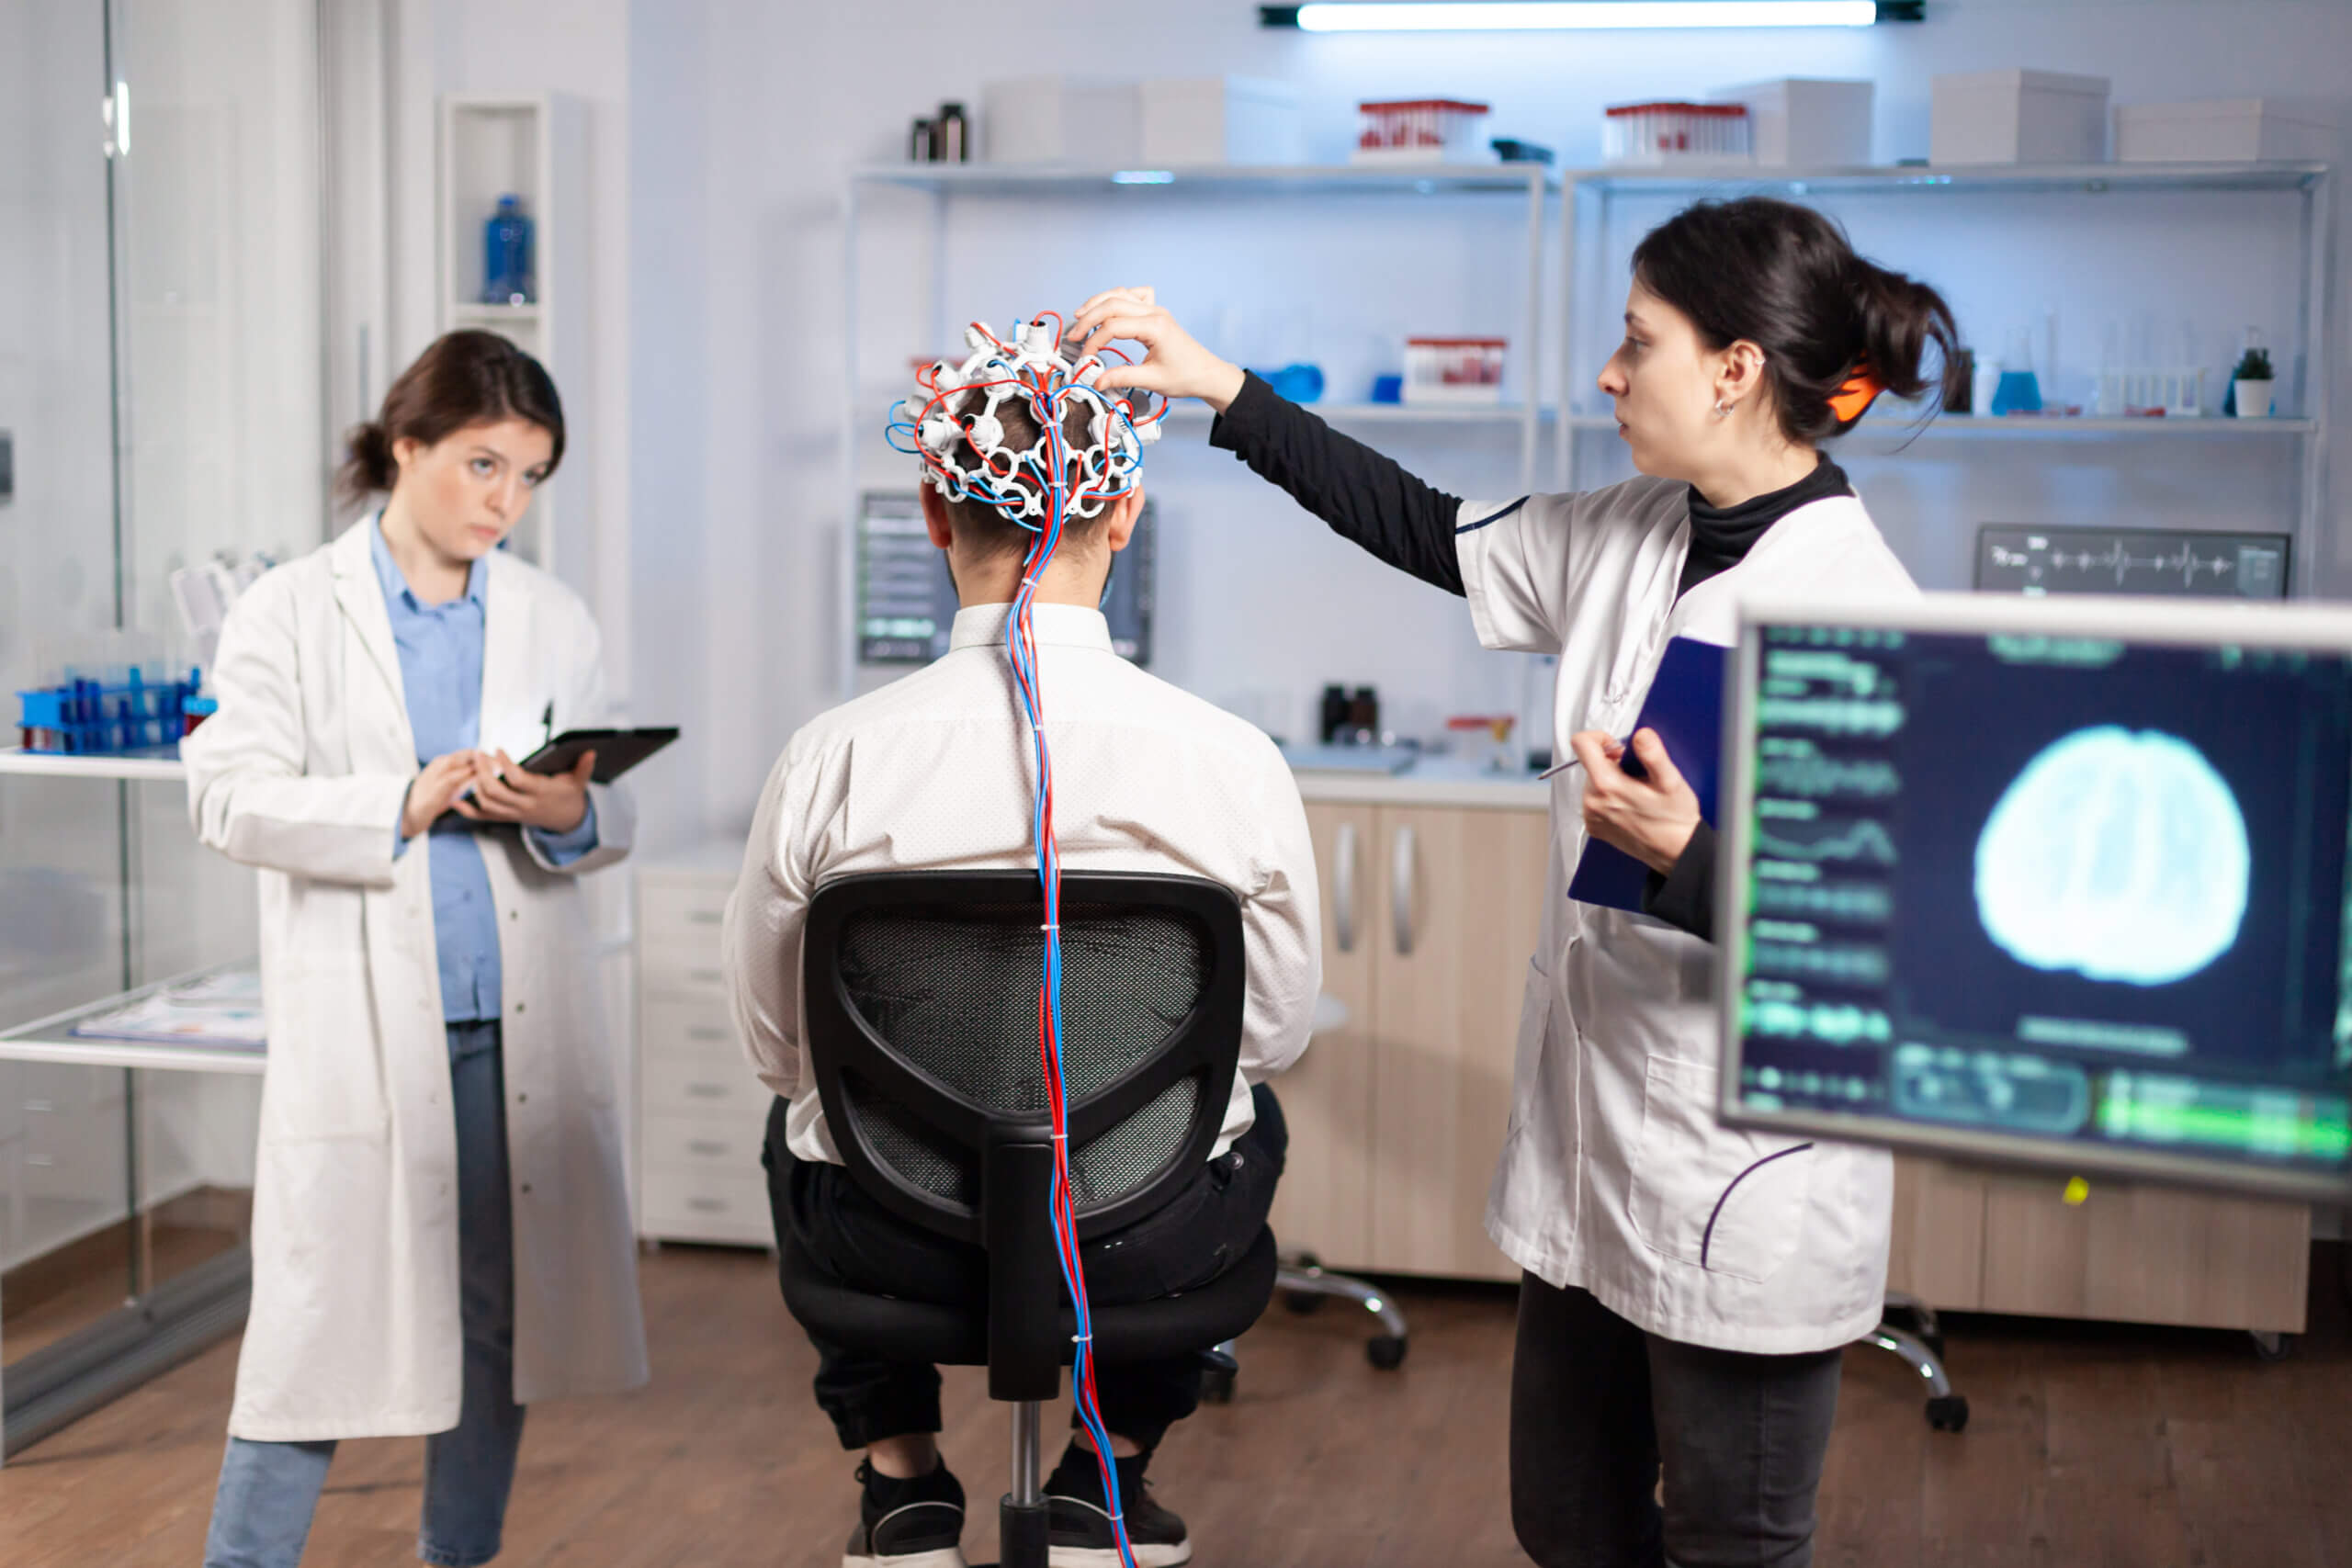 Pacijent na skeniranju moždanih valova koji sjedi u laboratoriju za neurološka istraživanja dok ga liječnice nadziru.